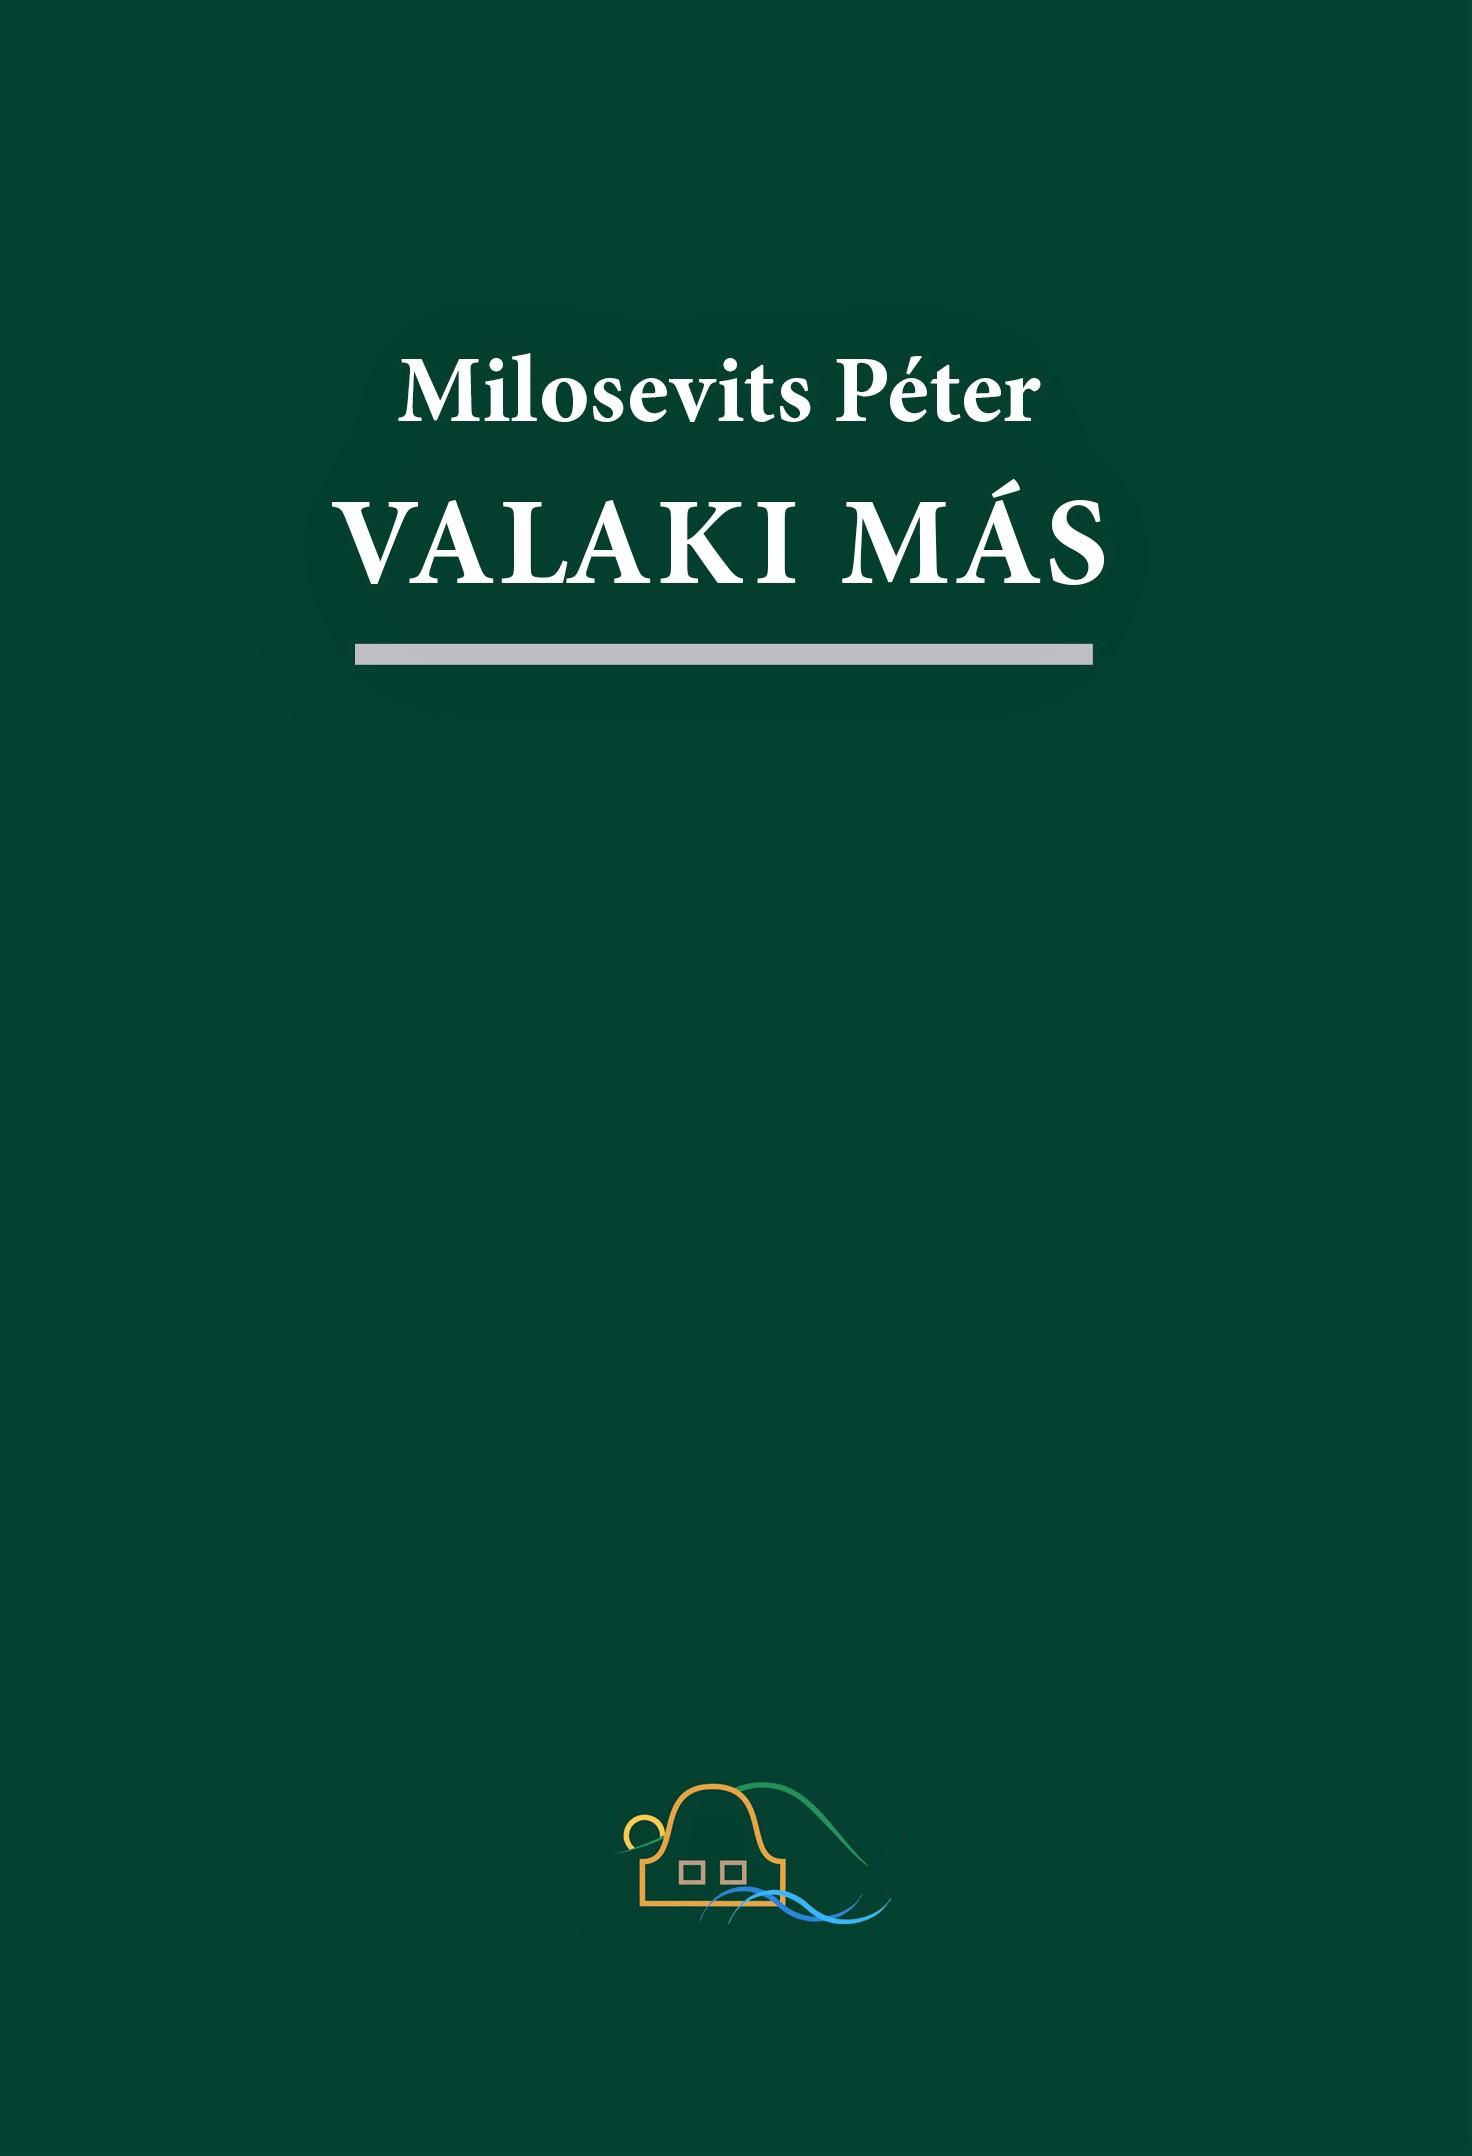 Milosevits Péter - Valaki más. Buli- és művésznovellák